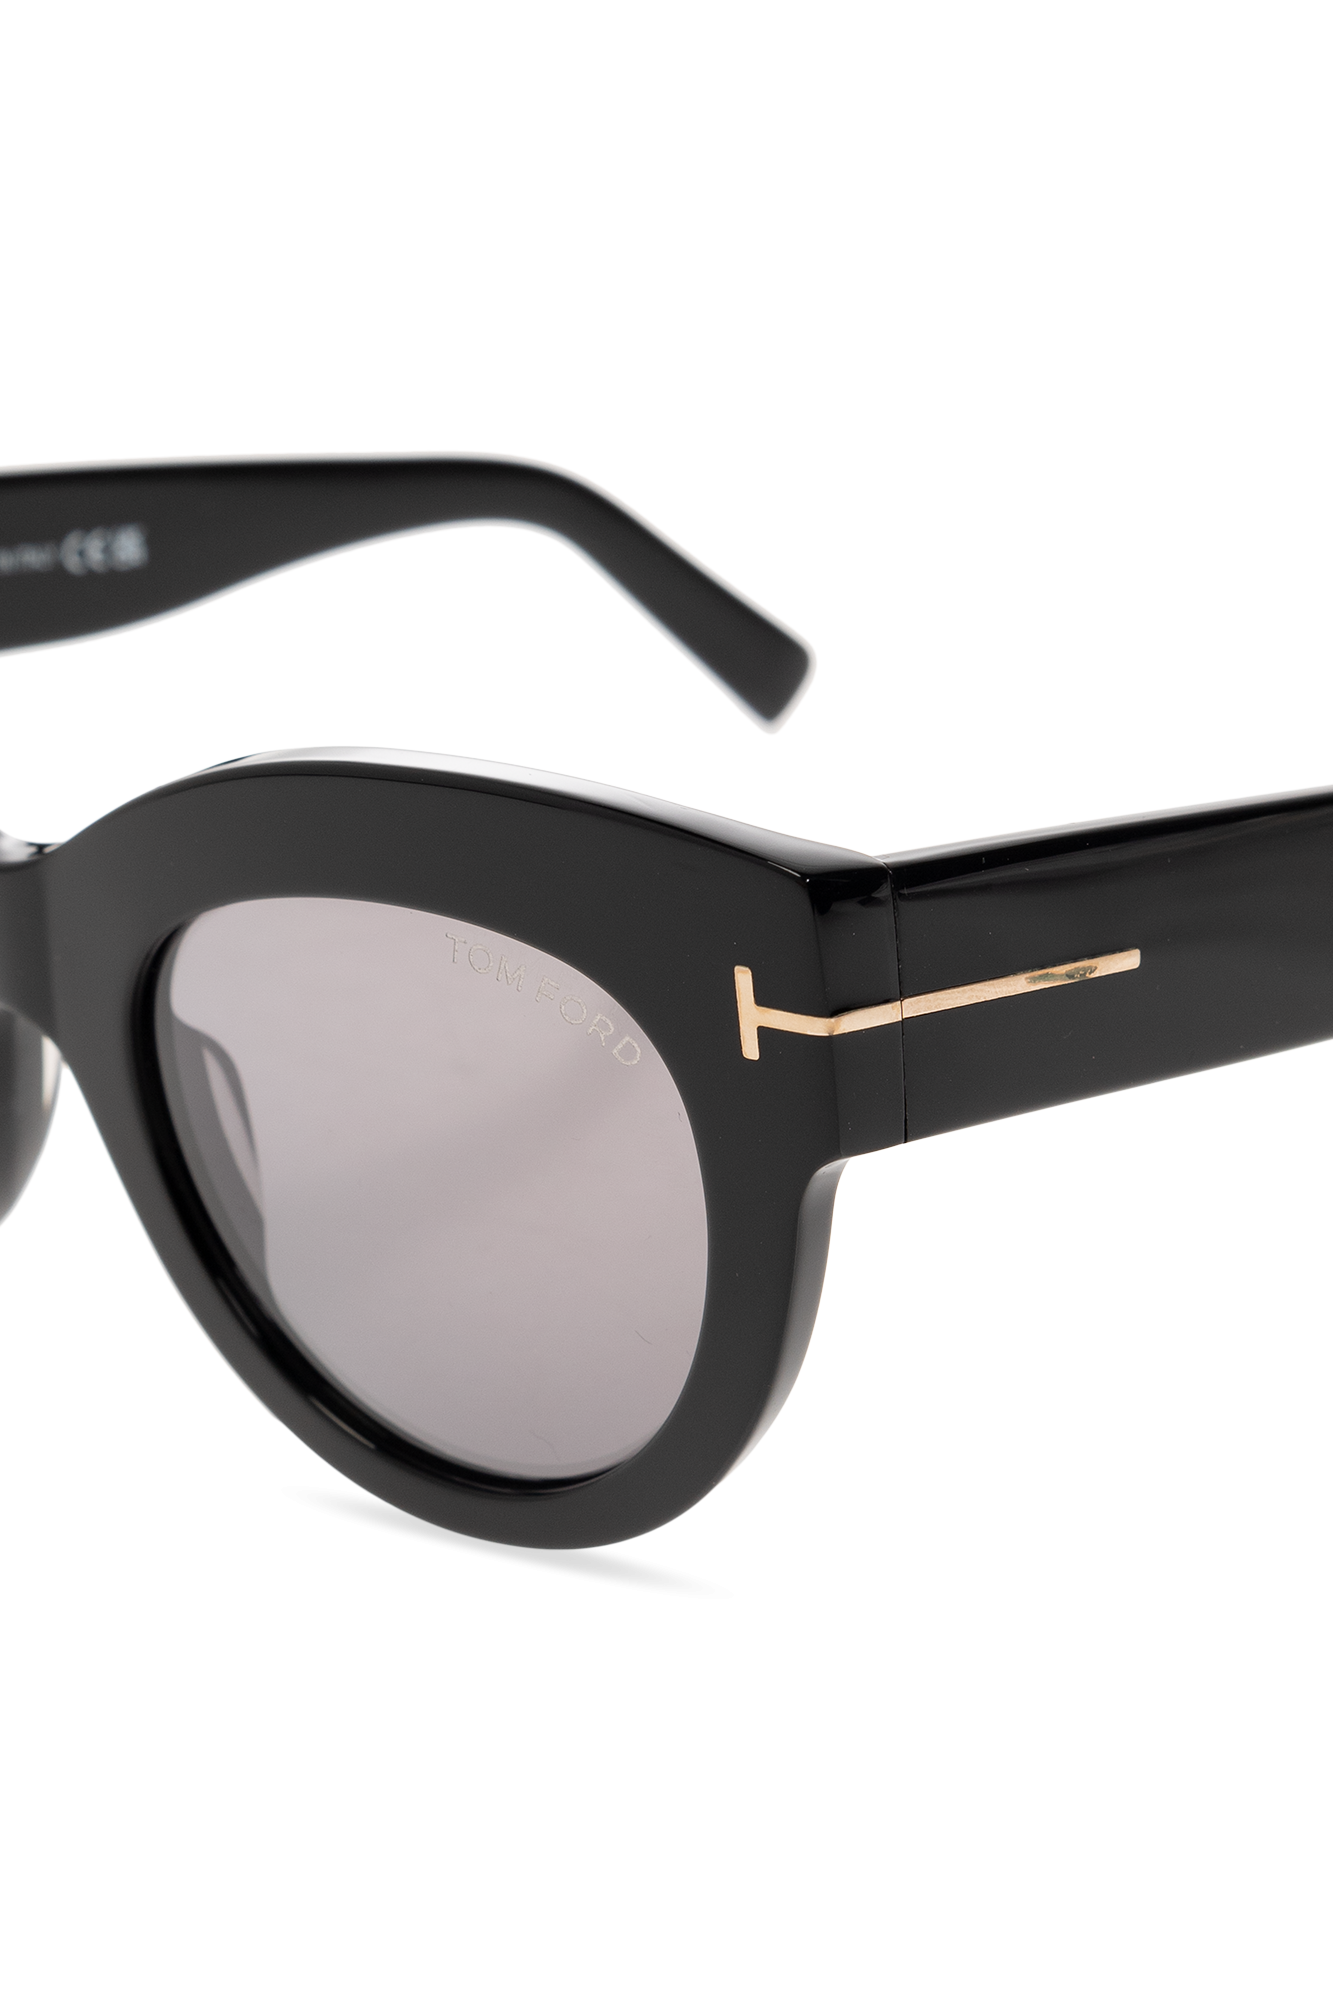 Tom Ford ‘Lucilla’ sunglasses